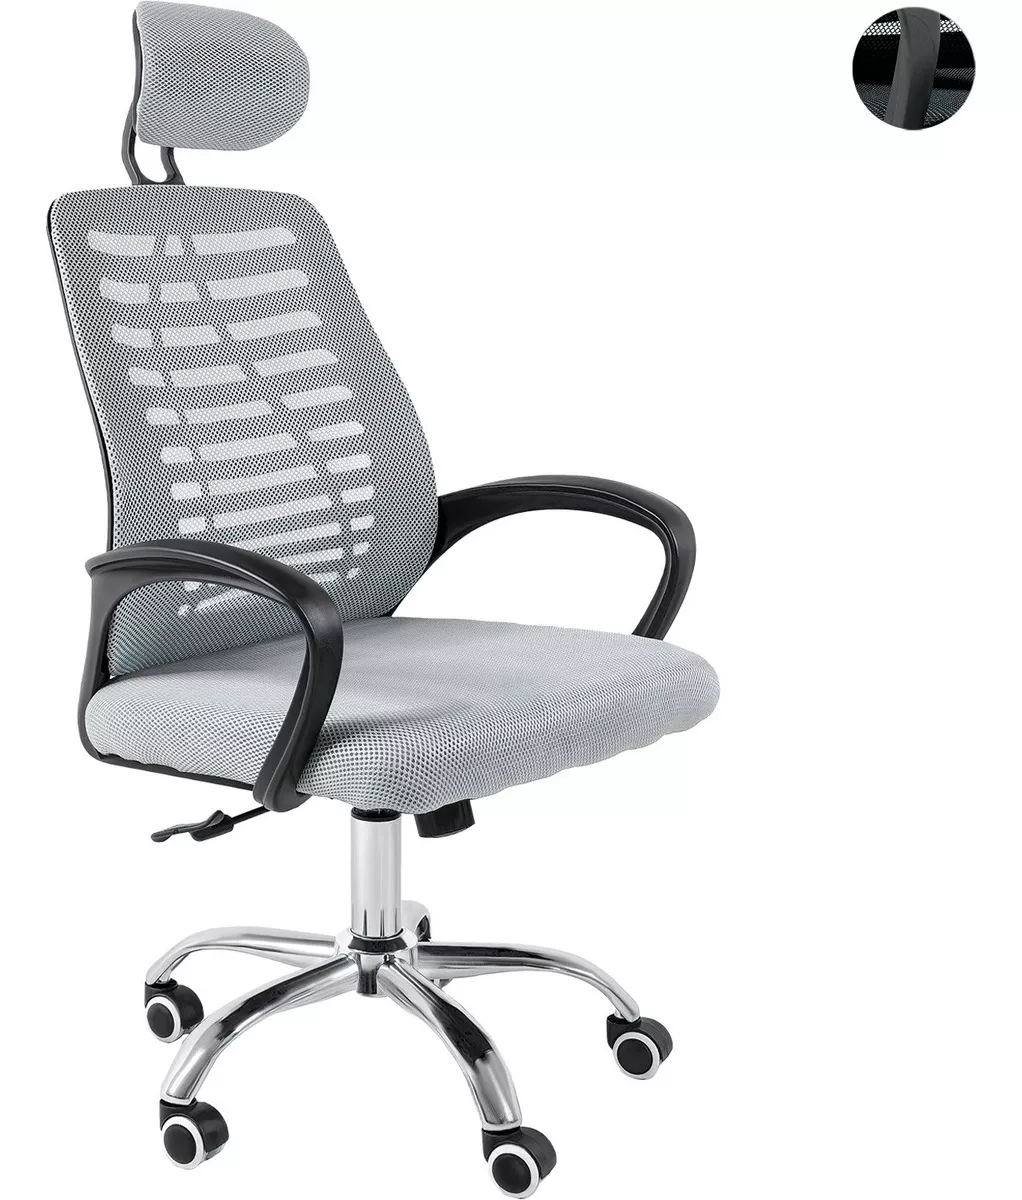 Tercera imagen para búsqueda de sillas alta giratoria para oficina